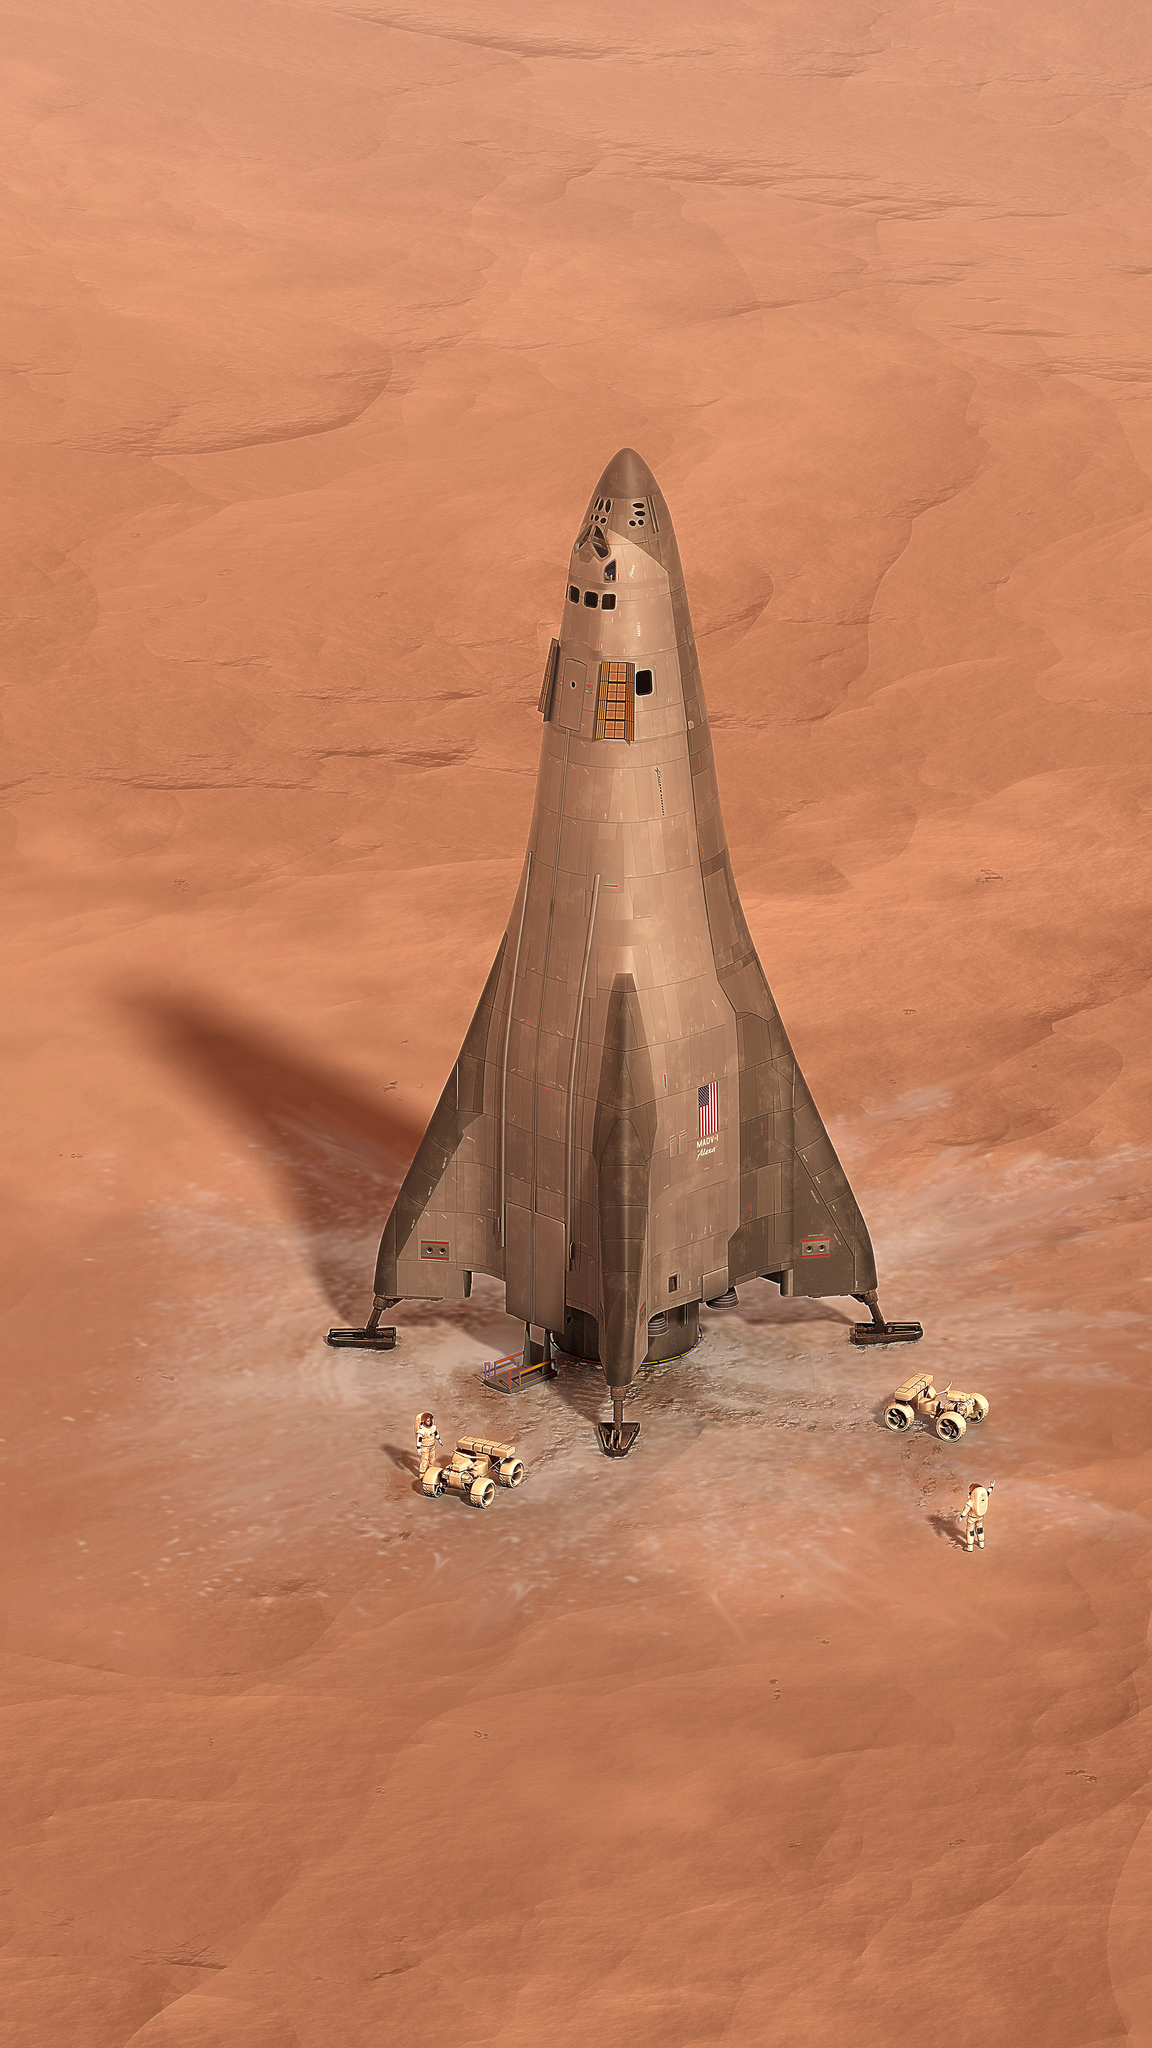 Mars Base Camp Lander